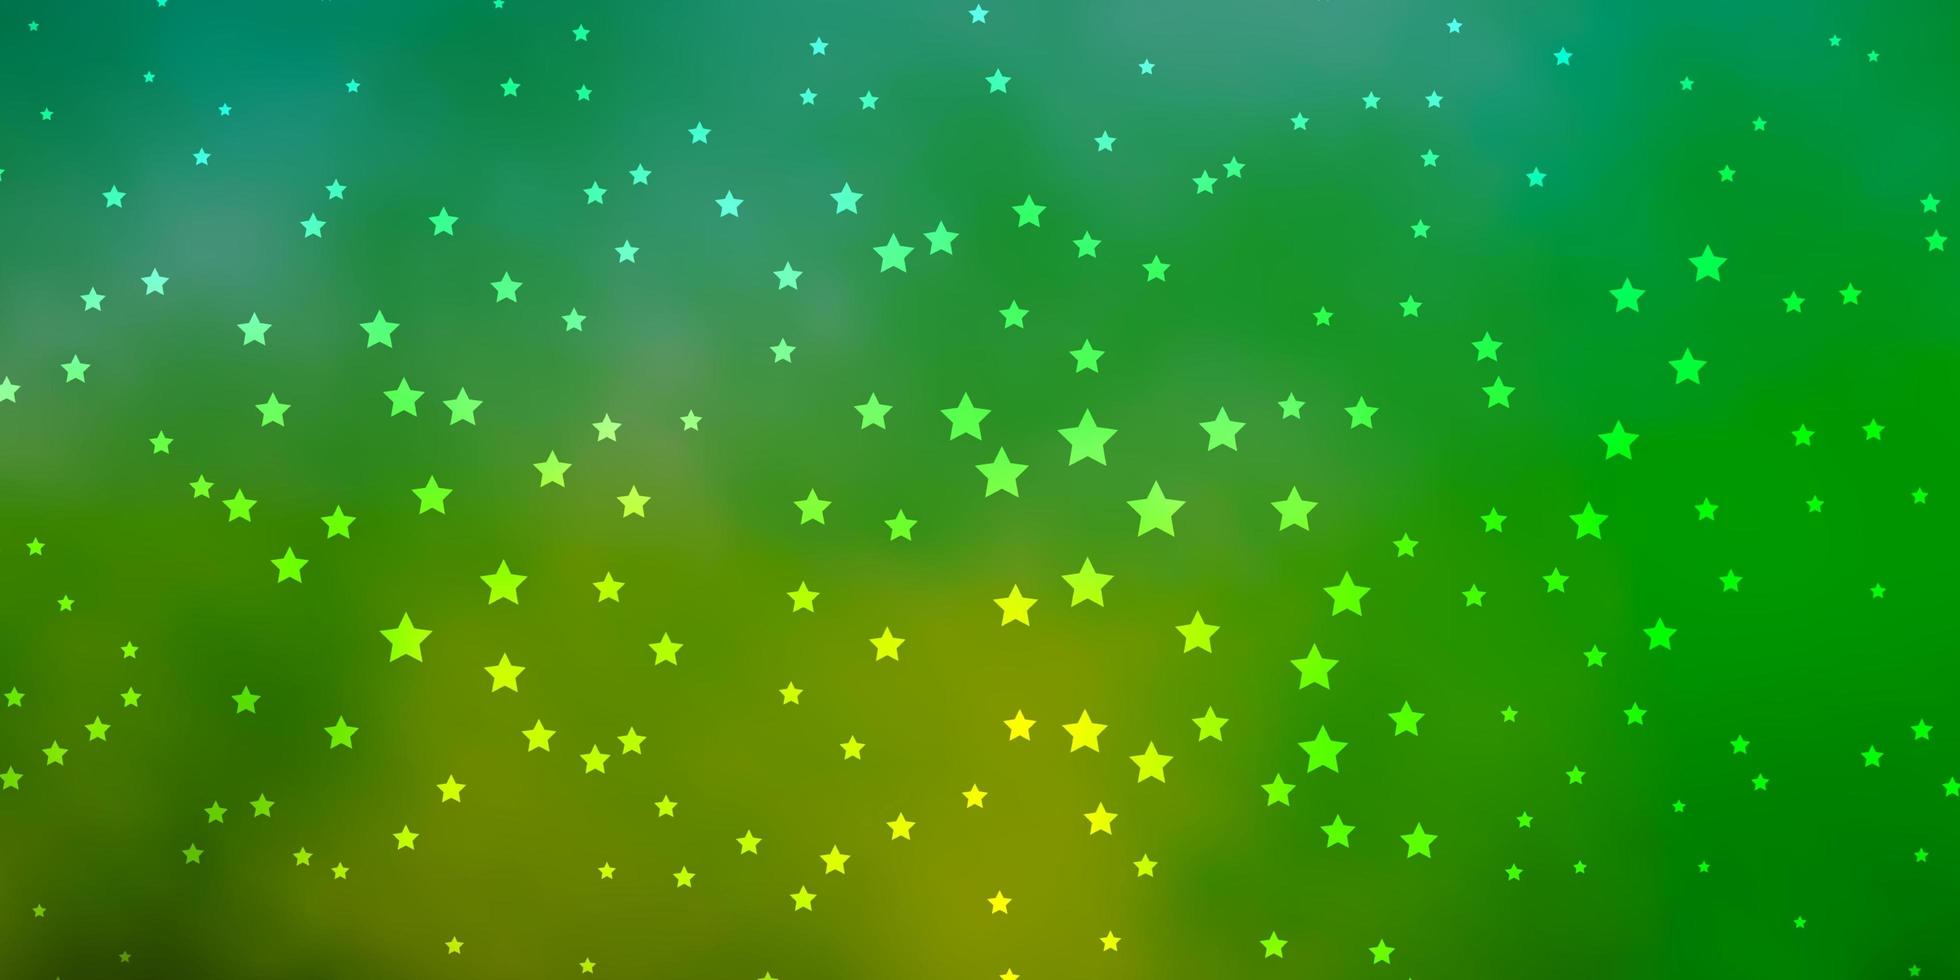 textura vector verde escuro com belas estrelas.